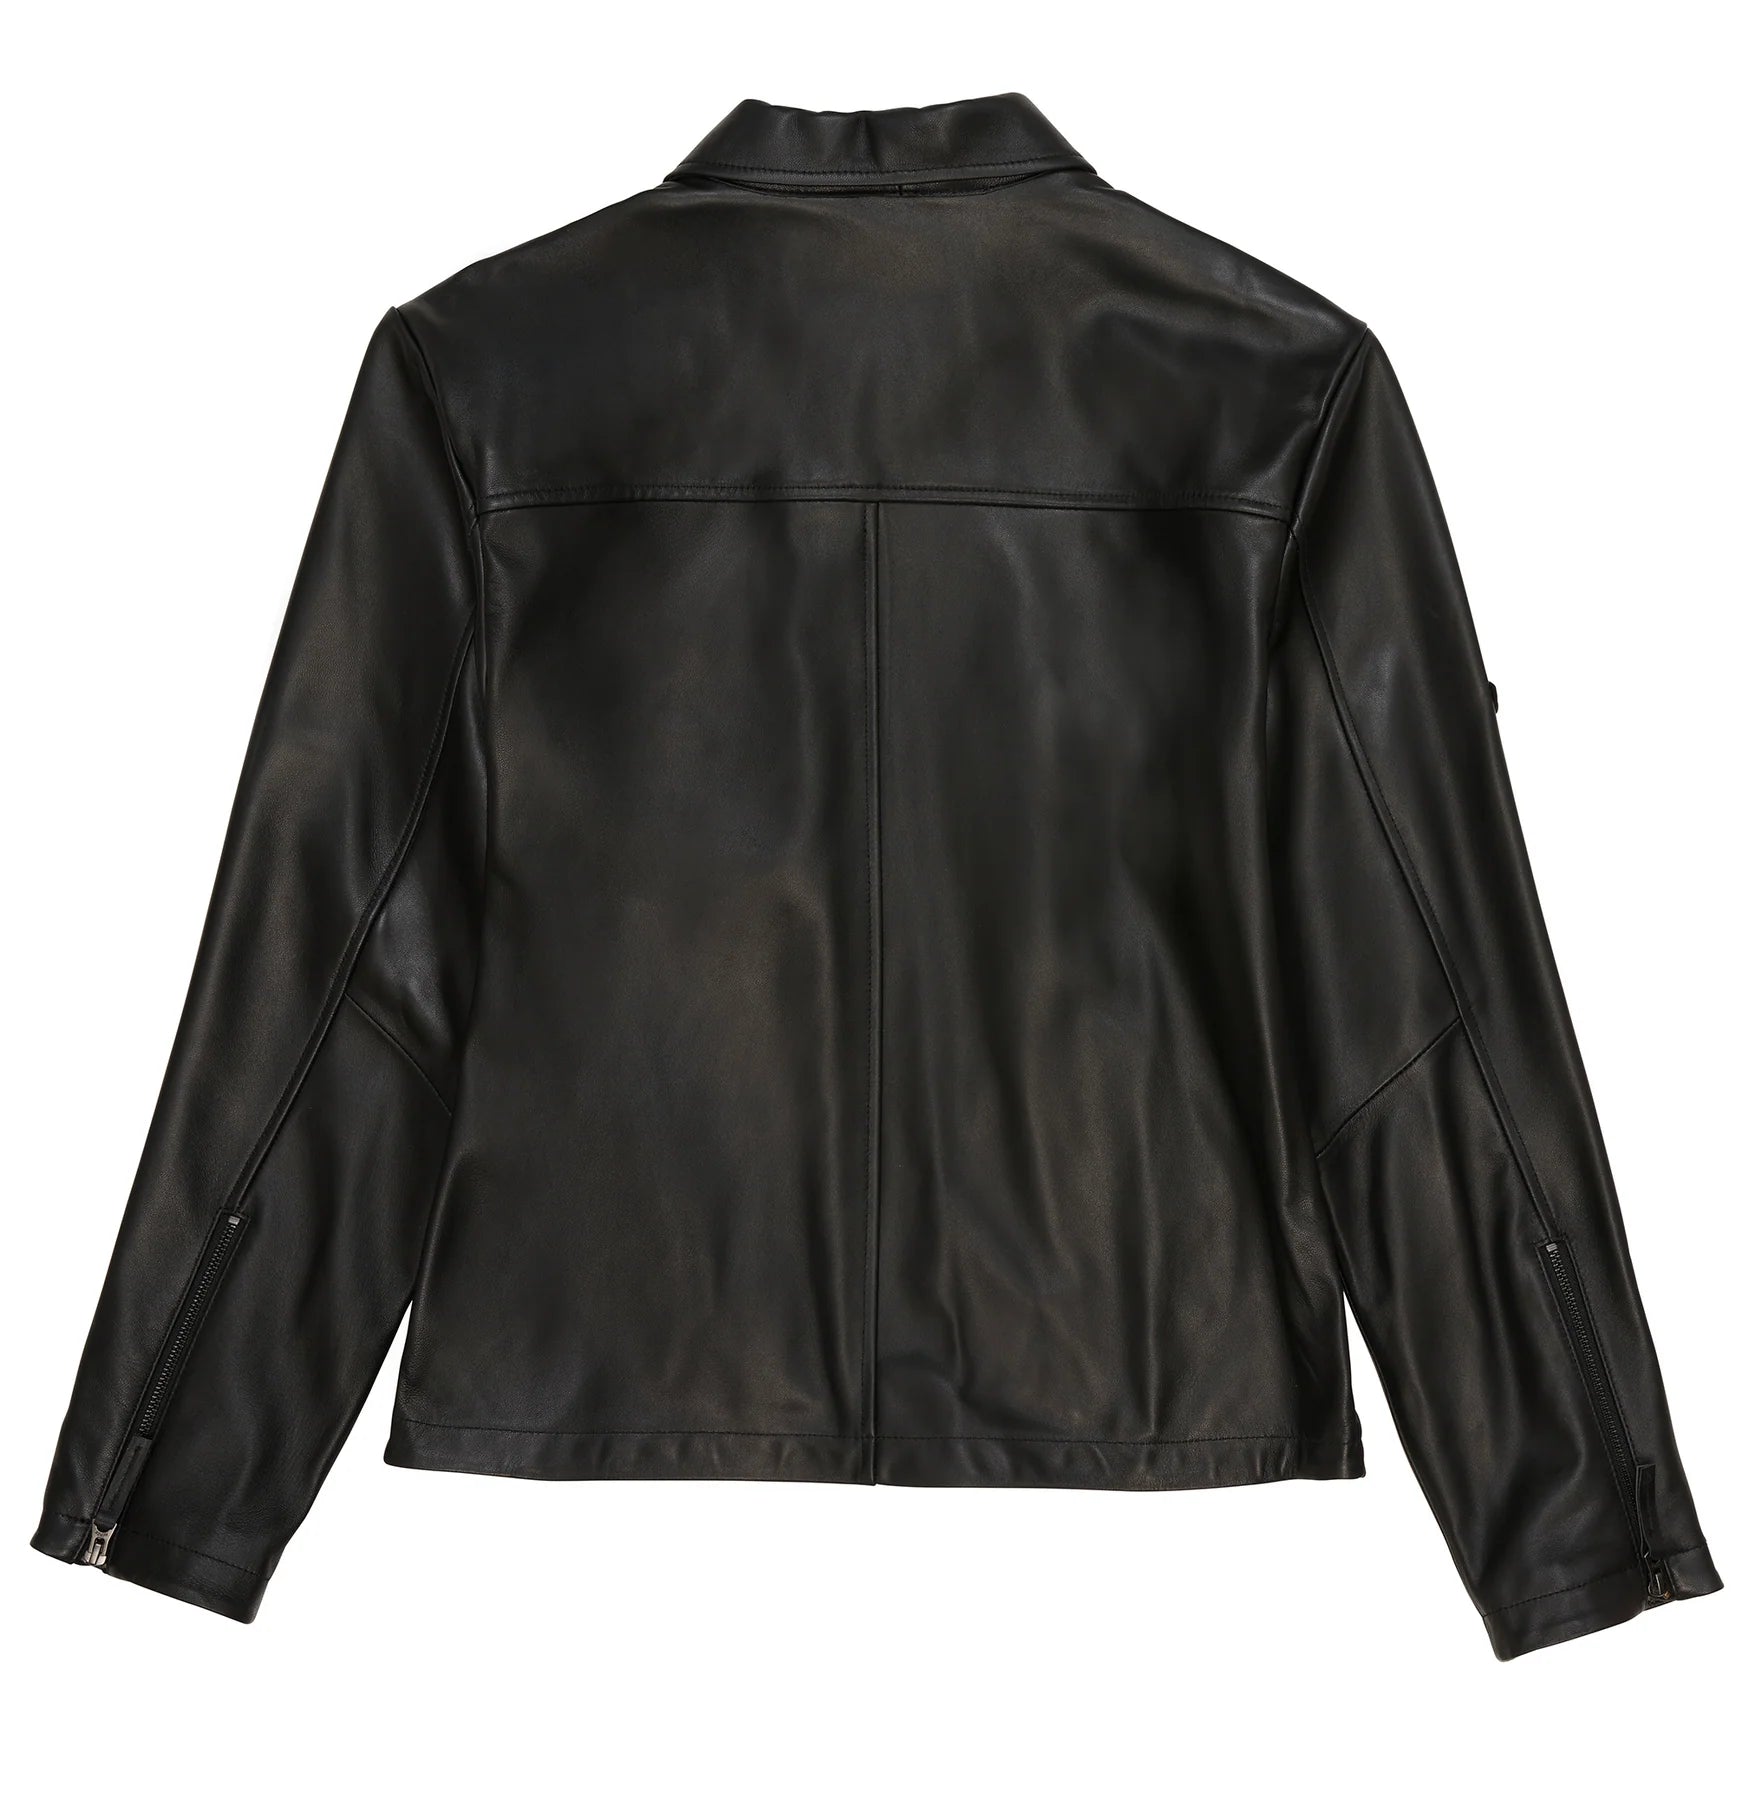 avirex-leather-aviator-shirt-jacket-back